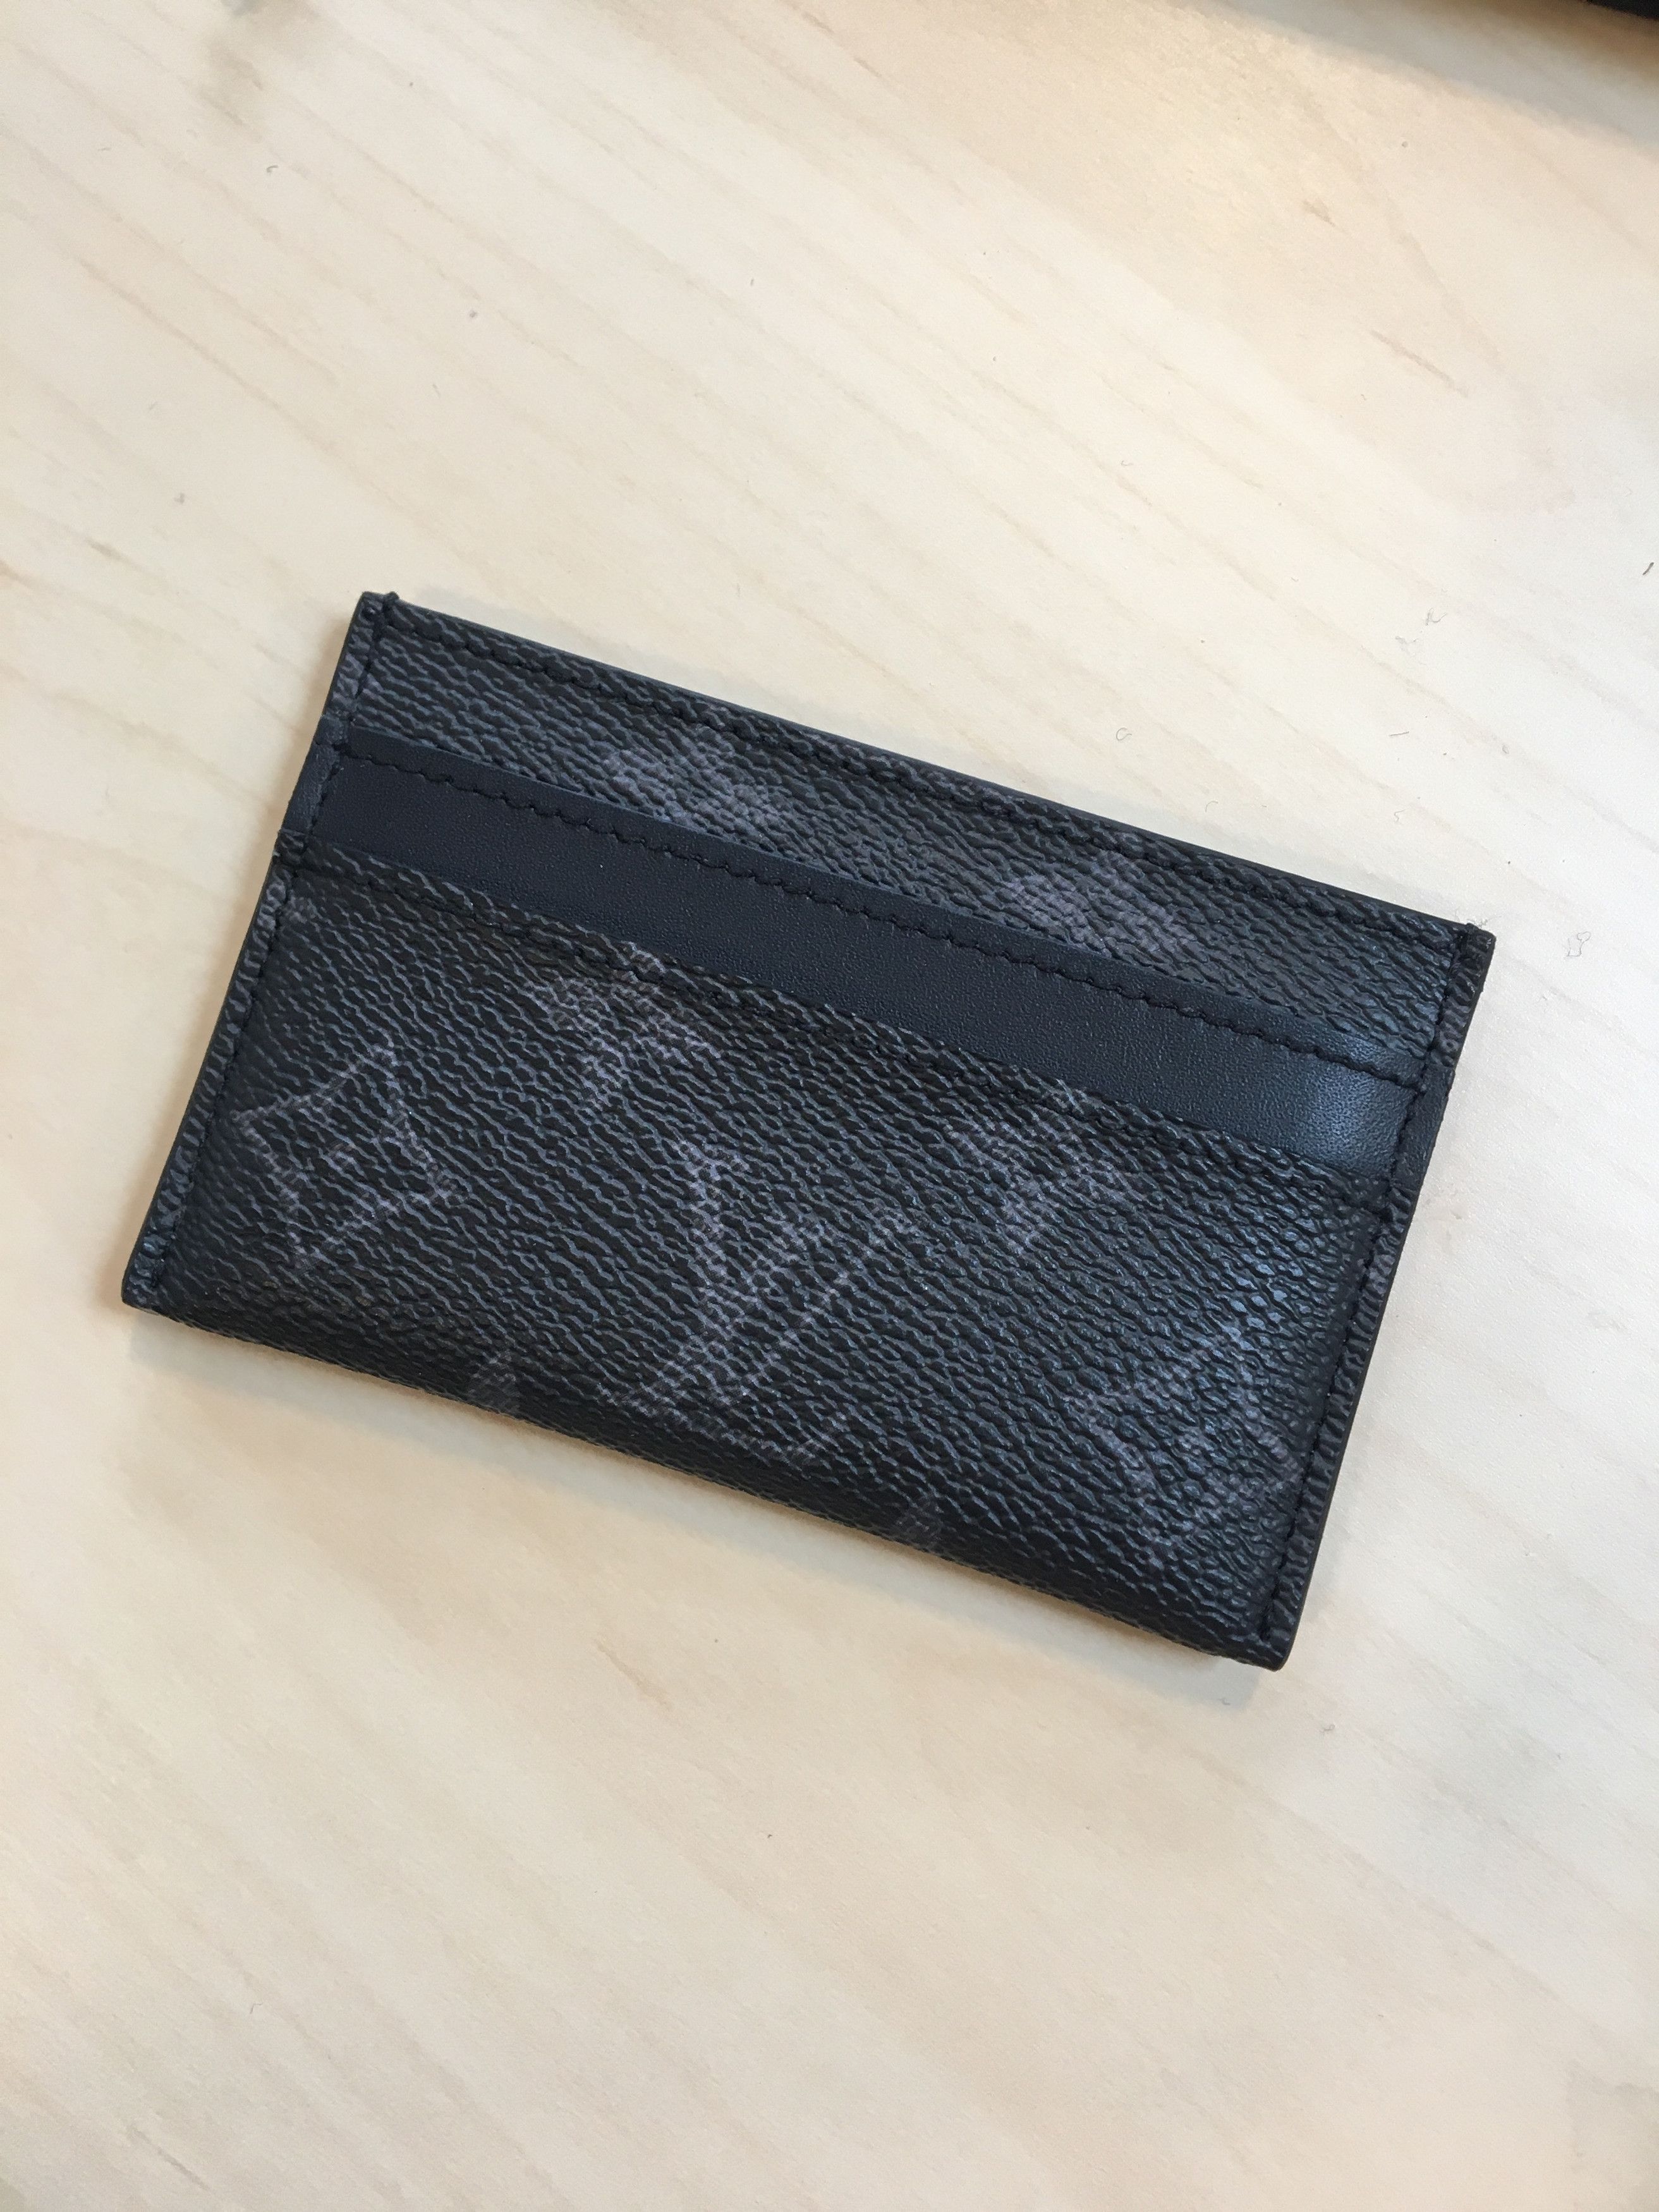 Shop Louis Vuitton Double Card Holder (M62170) by Amirashop